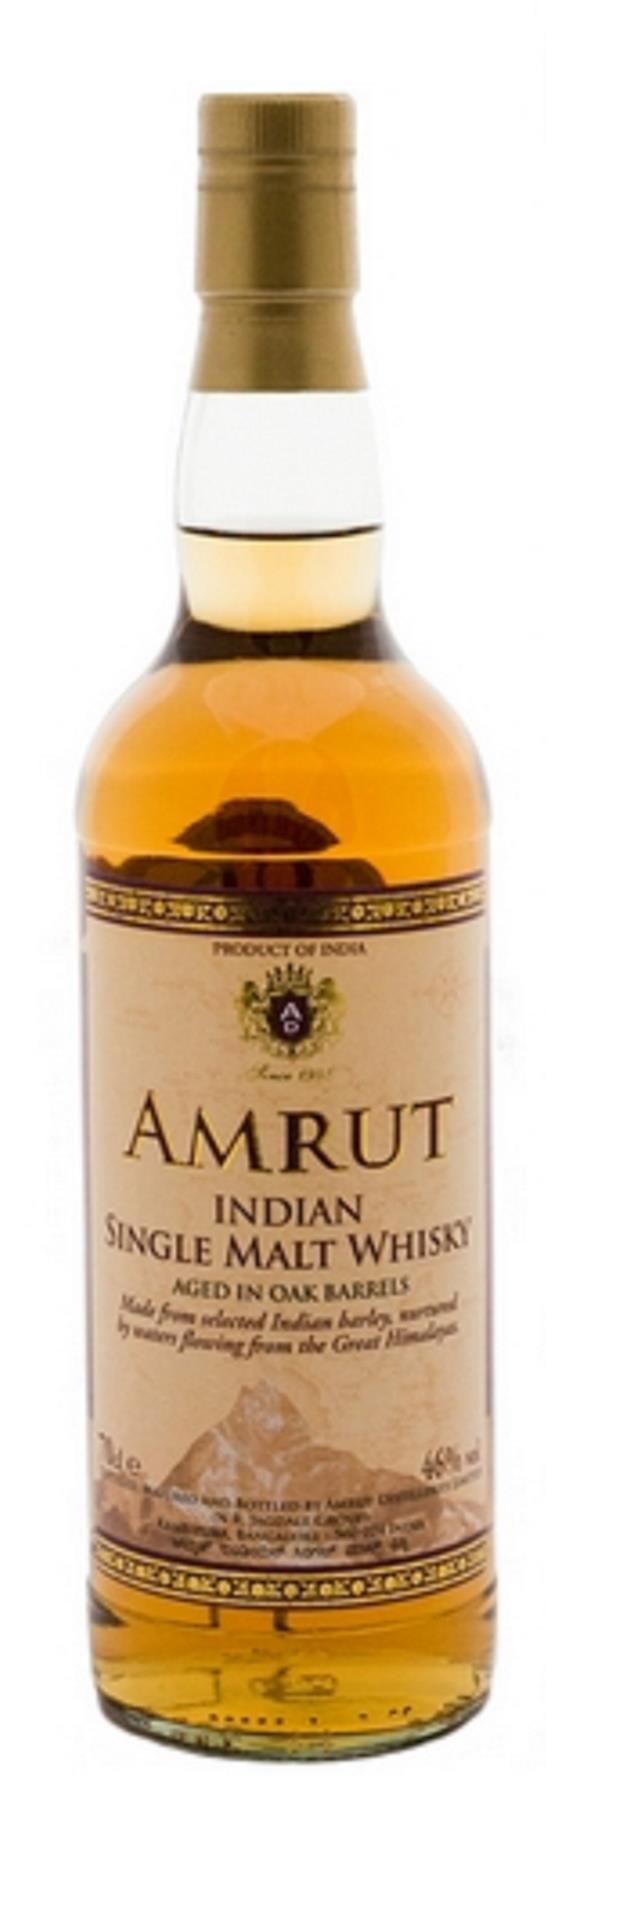 Amrut Indian Single Malt Whisky Ikke kaldfiltrert, ikke tilsatt farge.